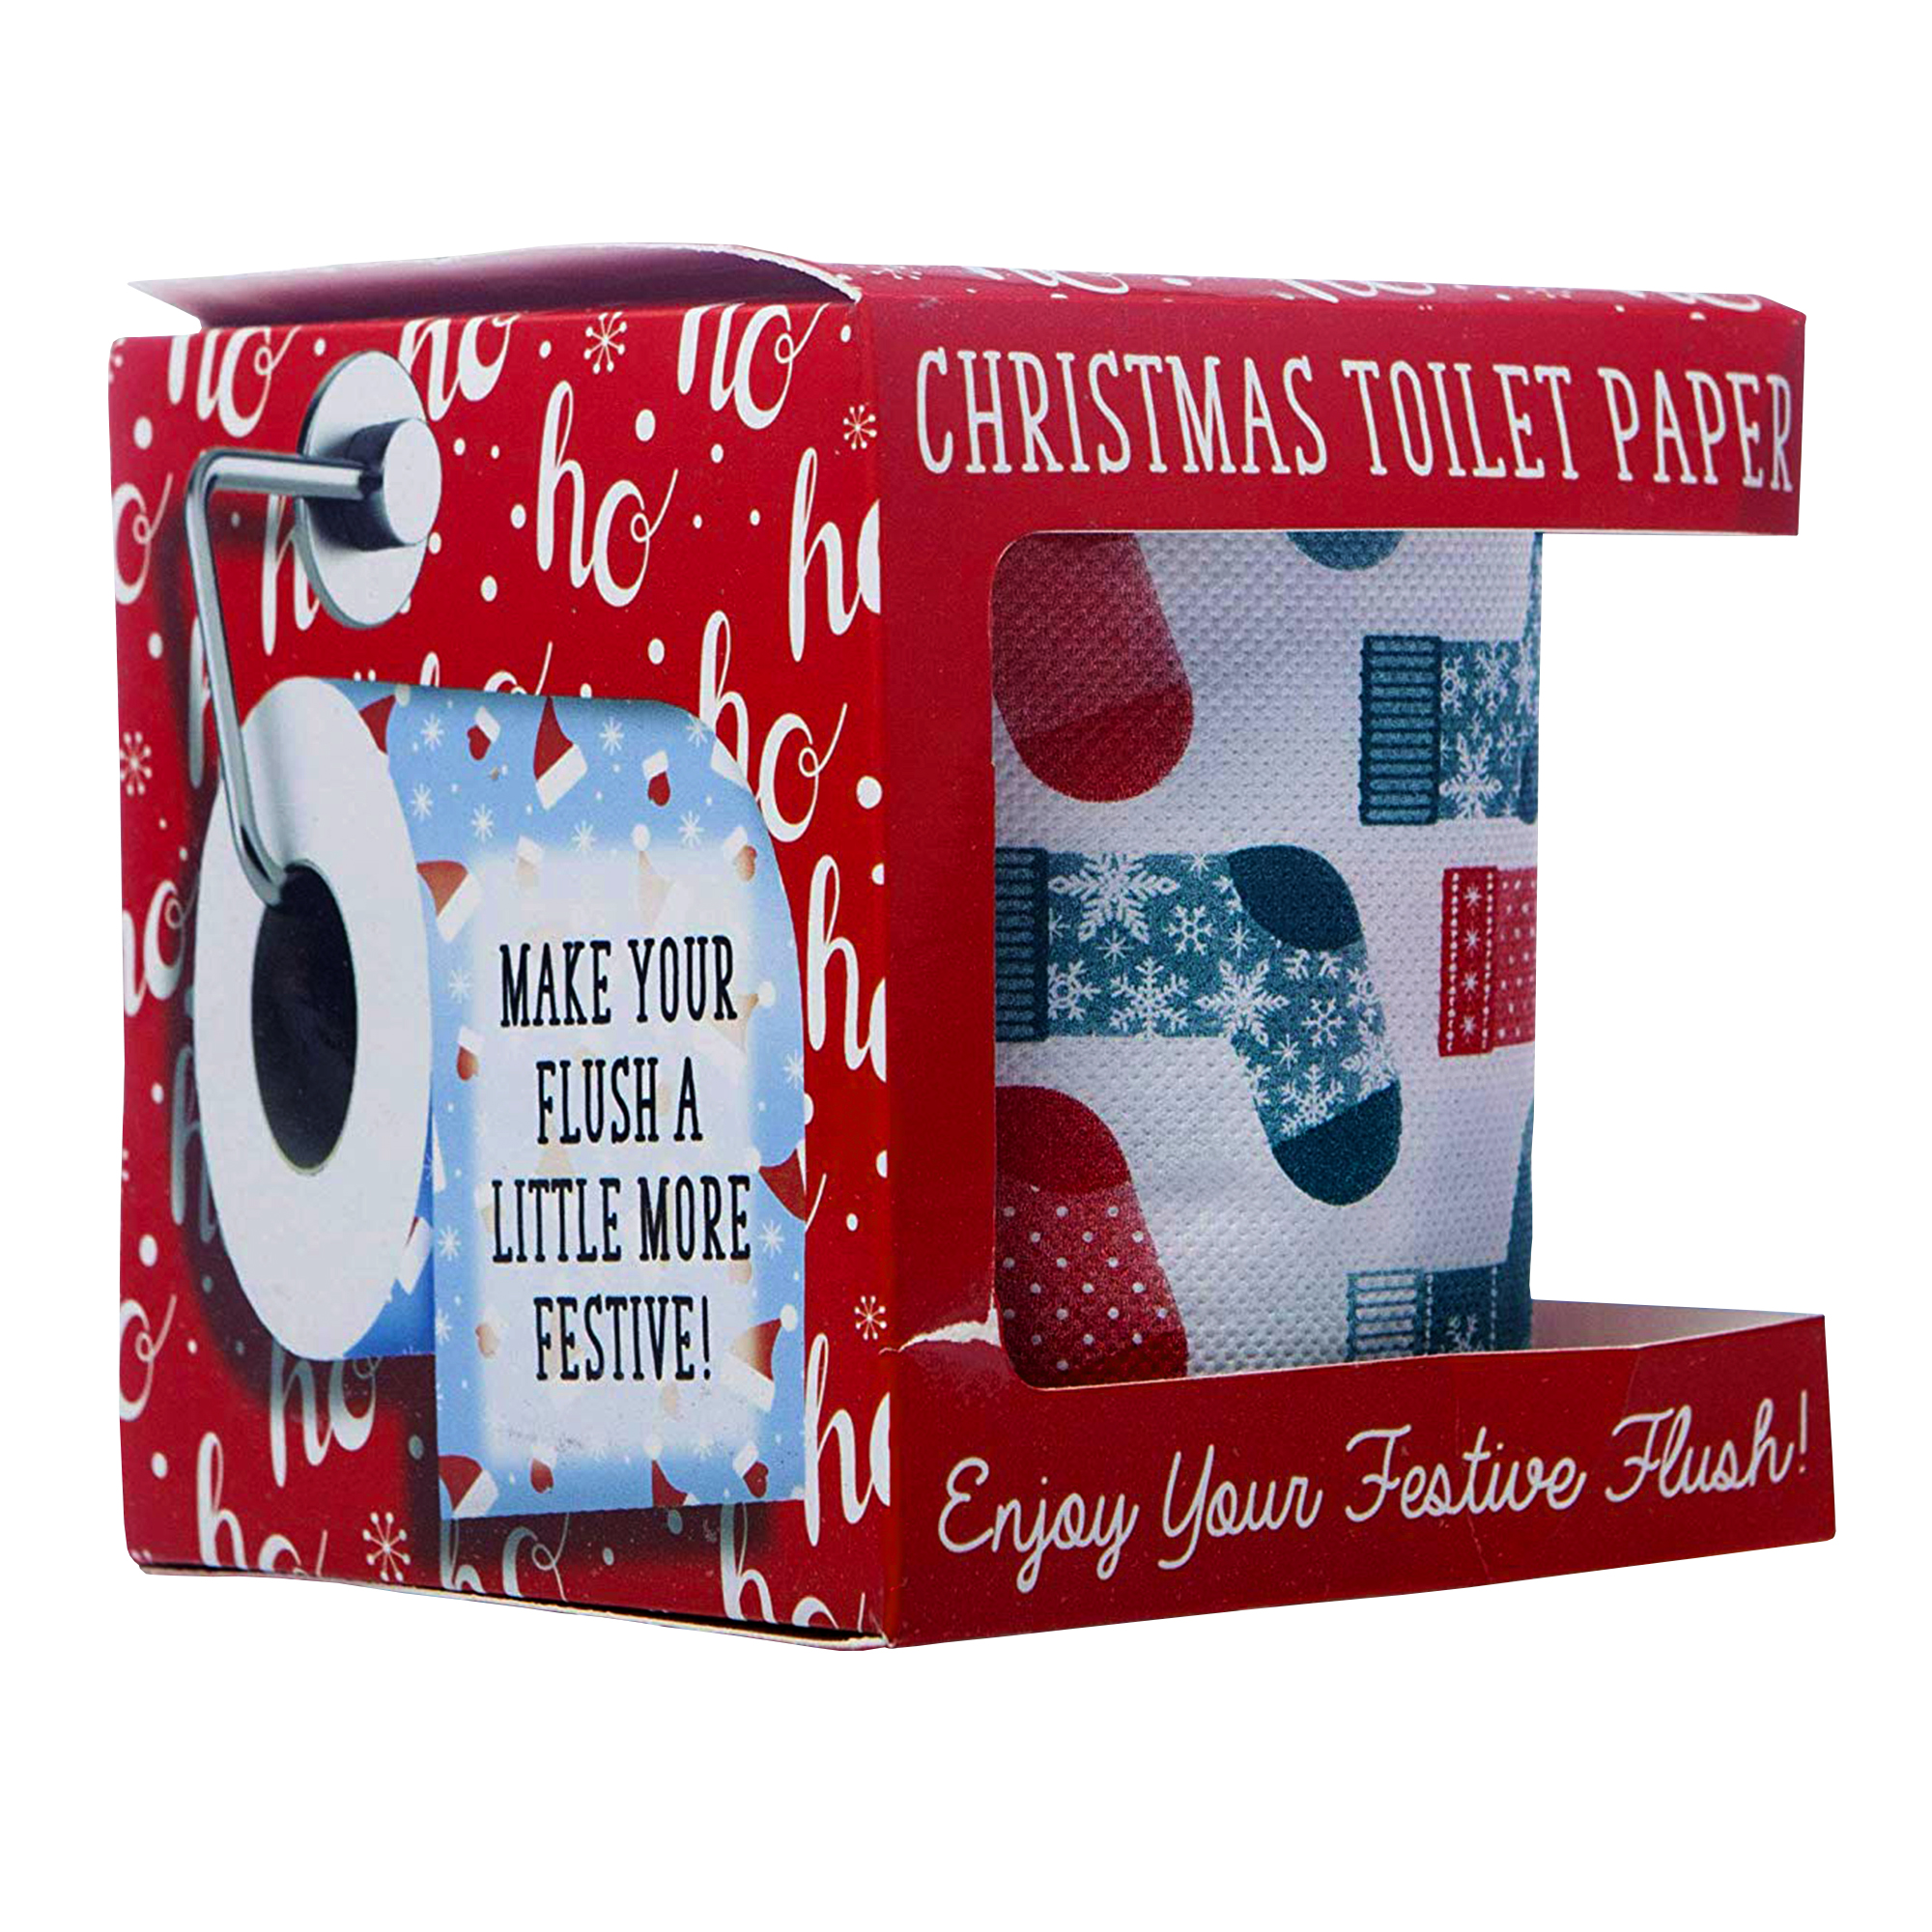 Bedrucktes Toilettenpapier - Weihnachtsstrumpf - 2er Set 4004 - 5